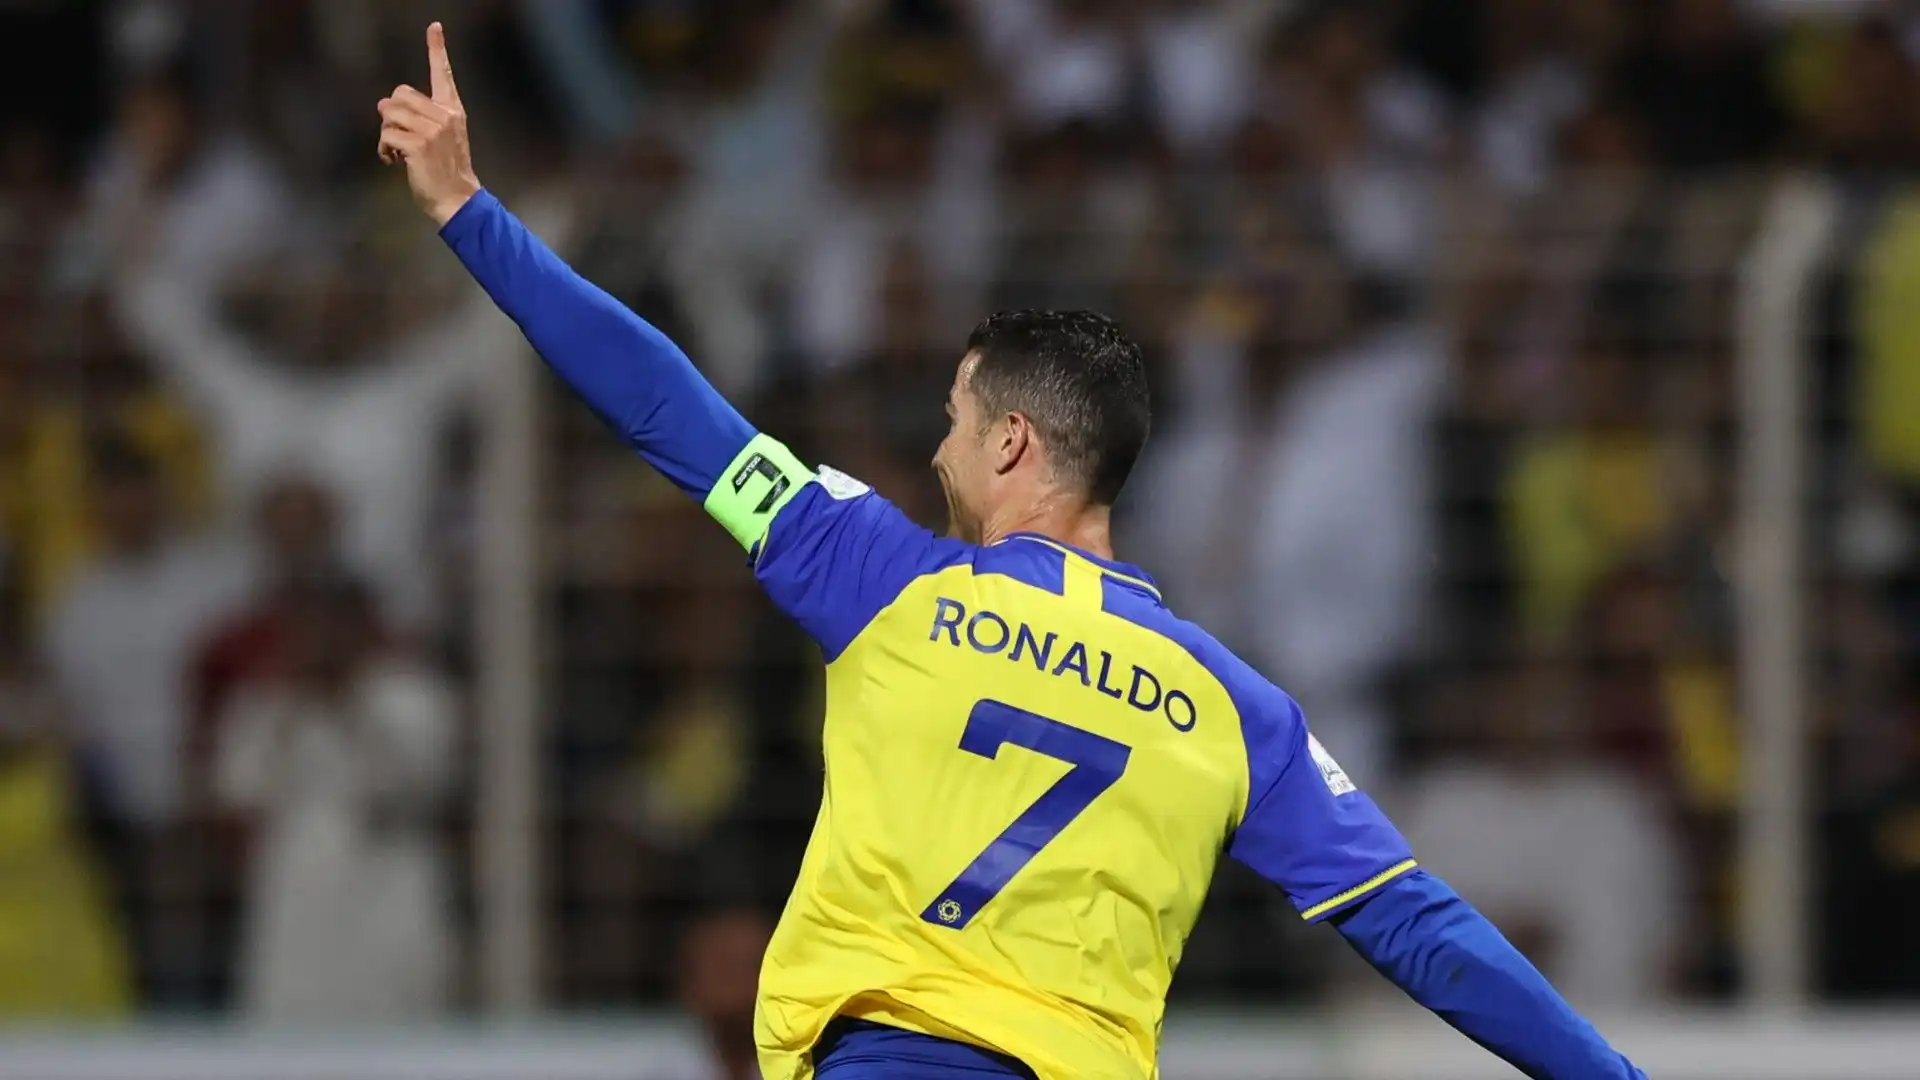 In Arabia Saudita realizza, in media, un gol ogni 161 minuti giocati